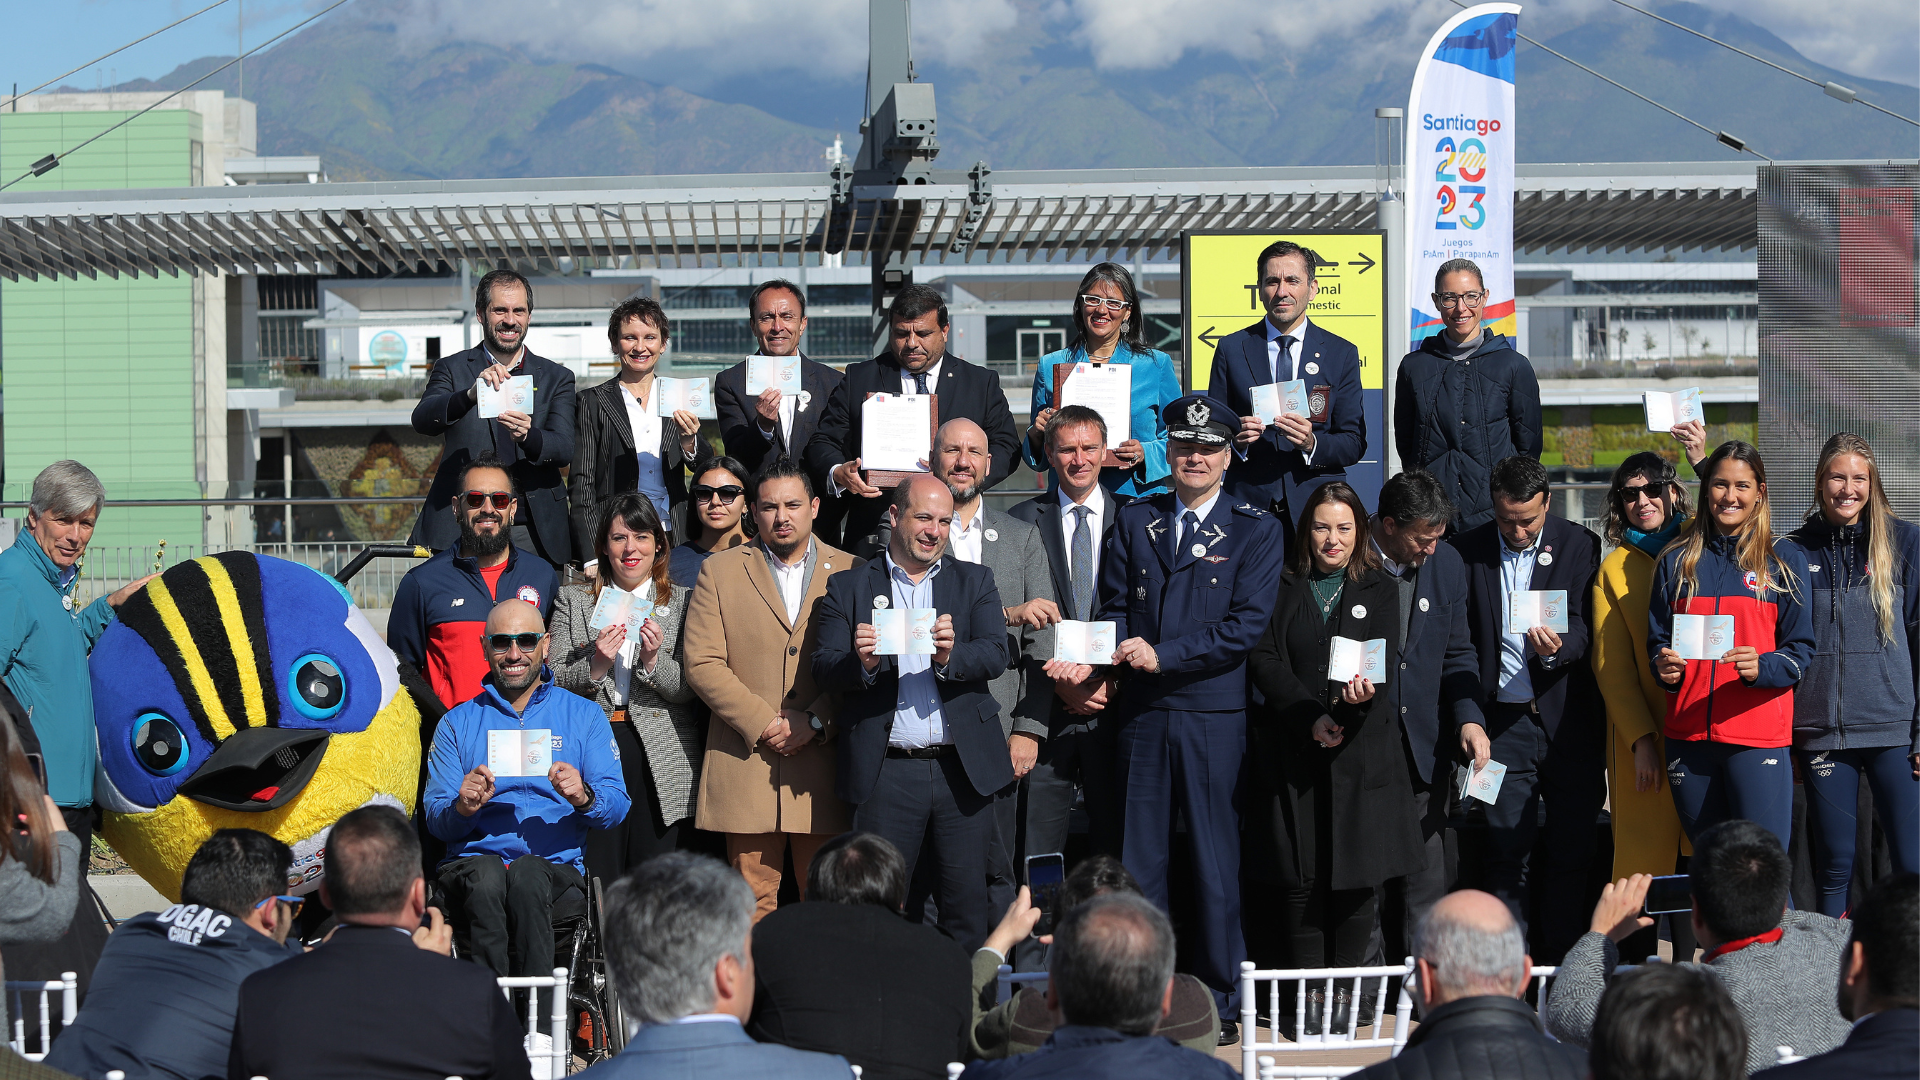 Gobierno lanza Timbre Pasaporte Santiago 2023 para recibir a deportistas y visitantes en el marco de los Juegos Panamericanos